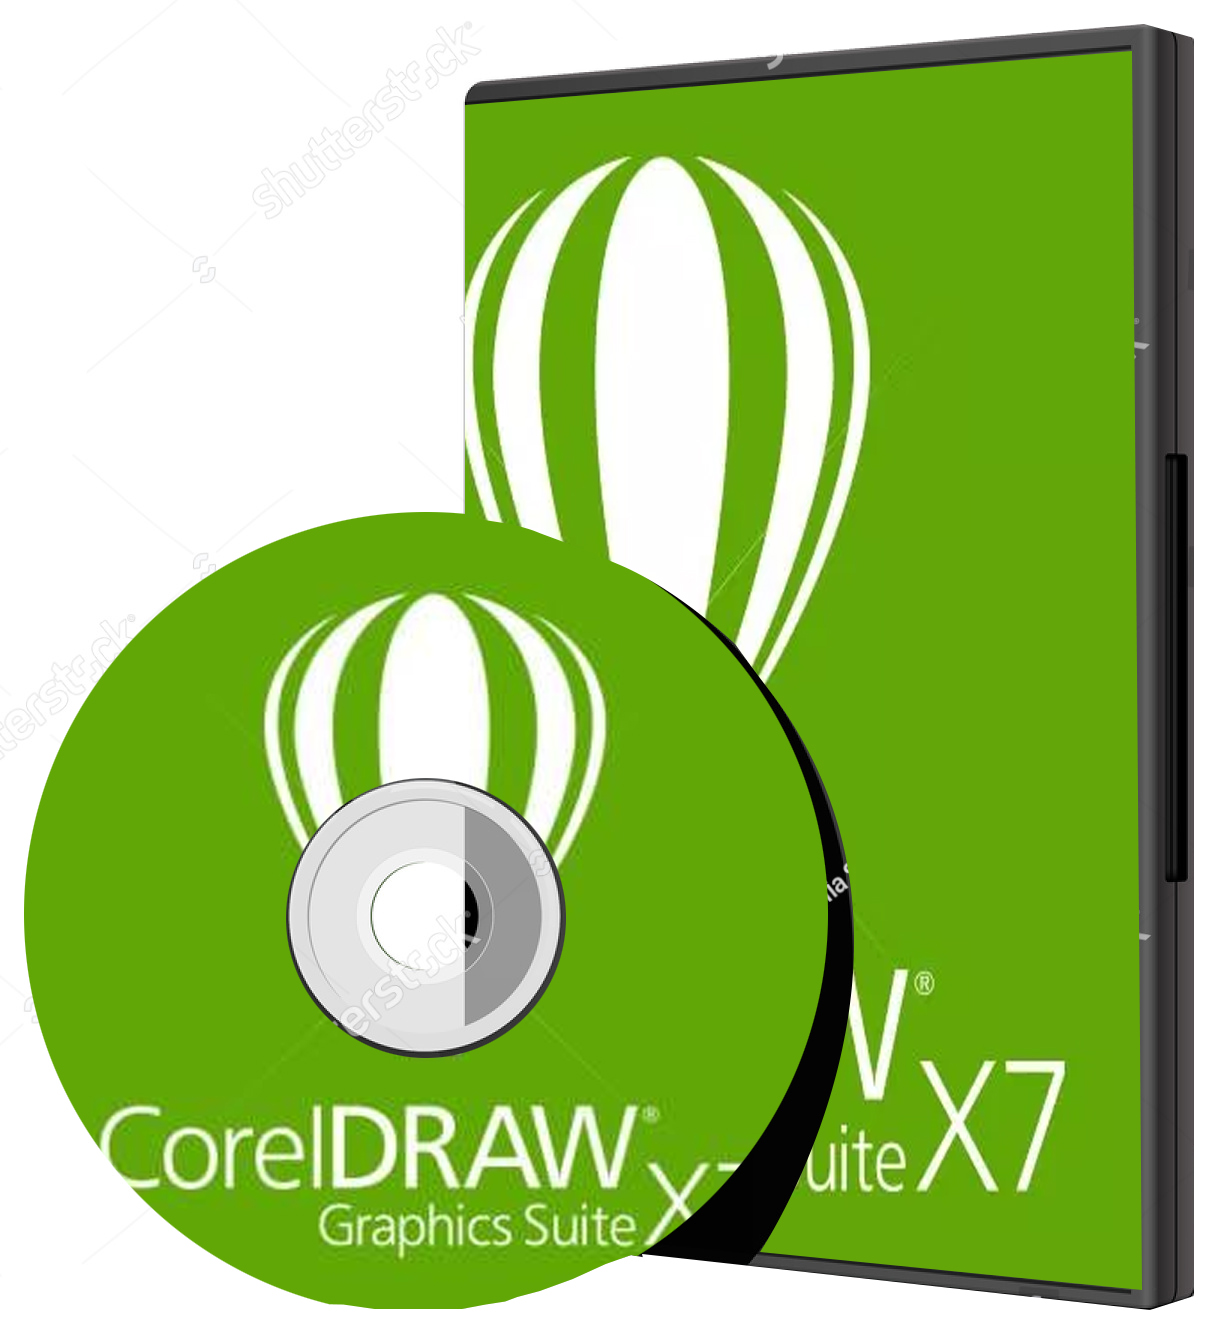 coreldraw x7 32 bit download